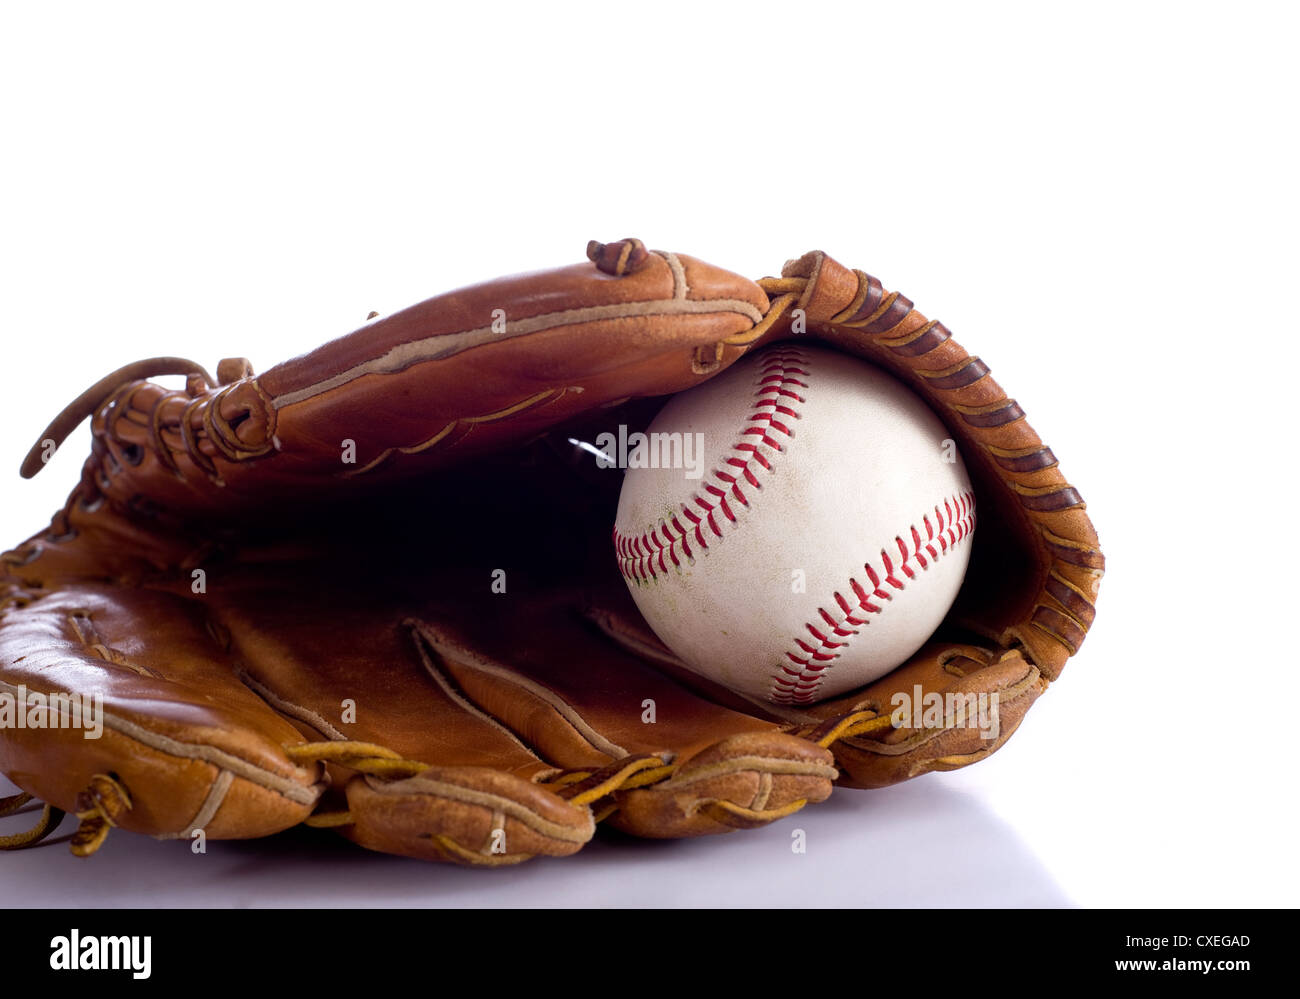 Un gant de baseball en cuir et une casquette sur un fond blanc avec copie espace Banque D'Images